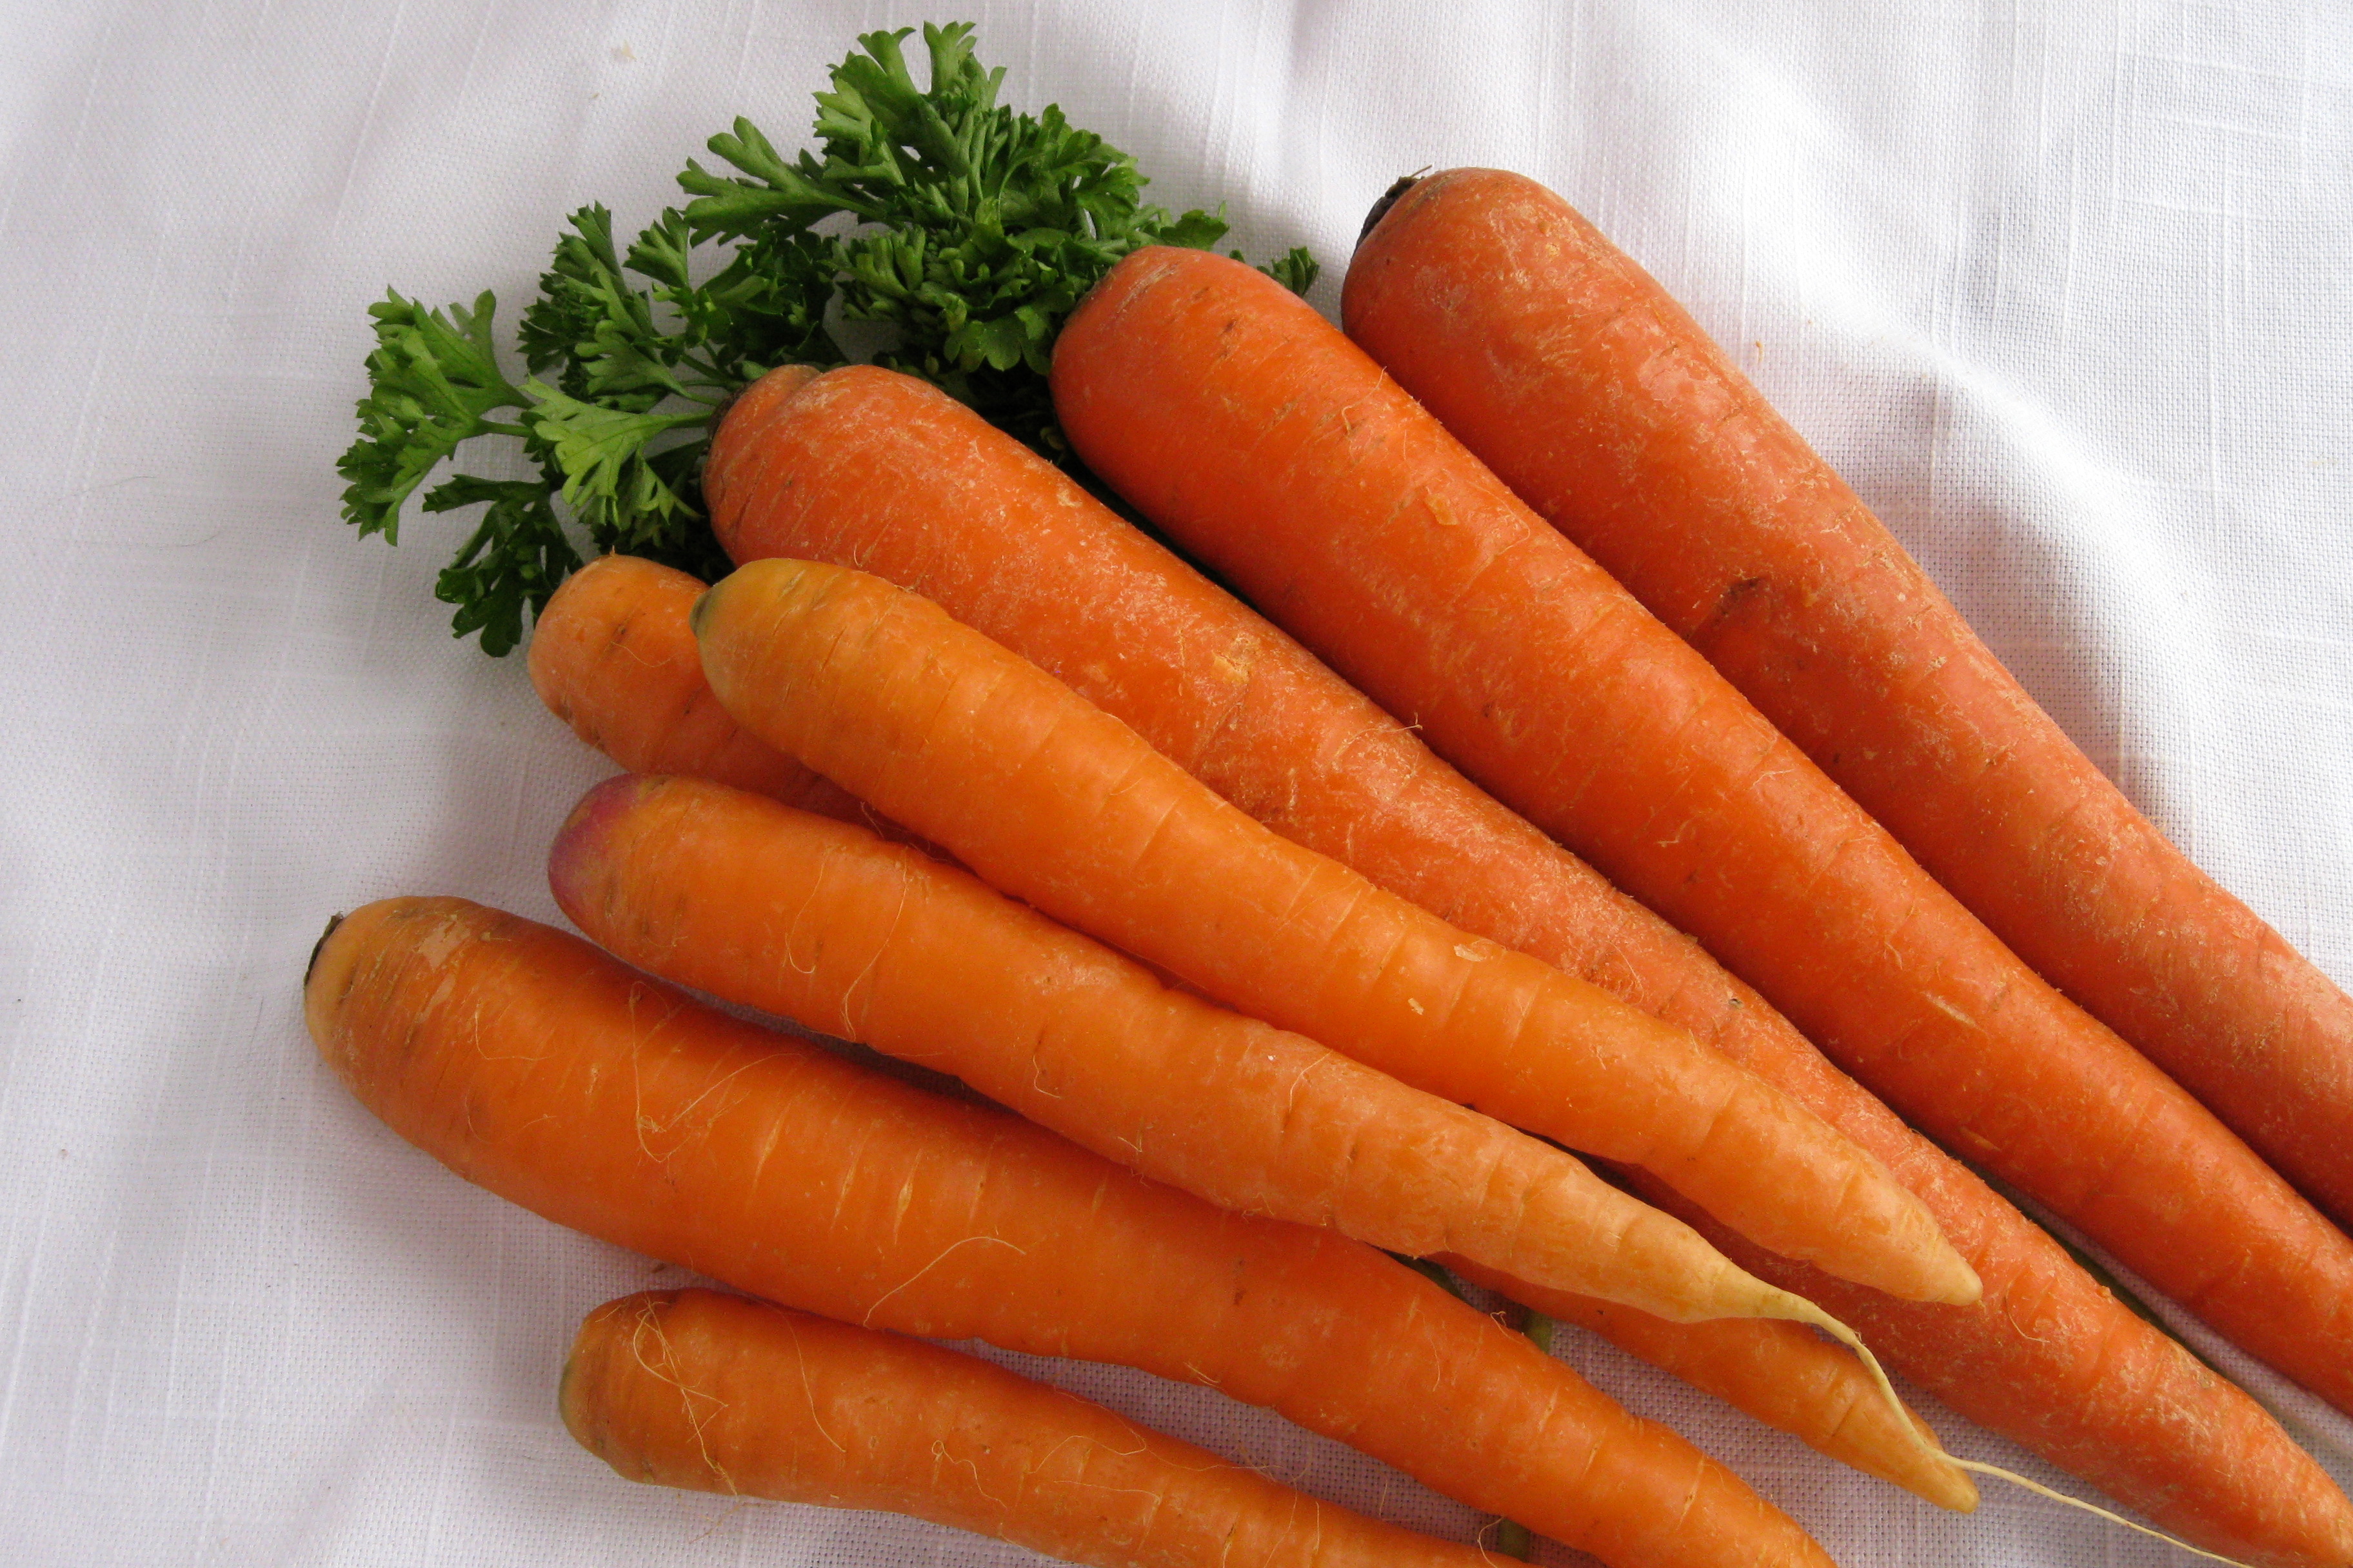 Carrots - Carrot Images Hd - HD Wallpaper 